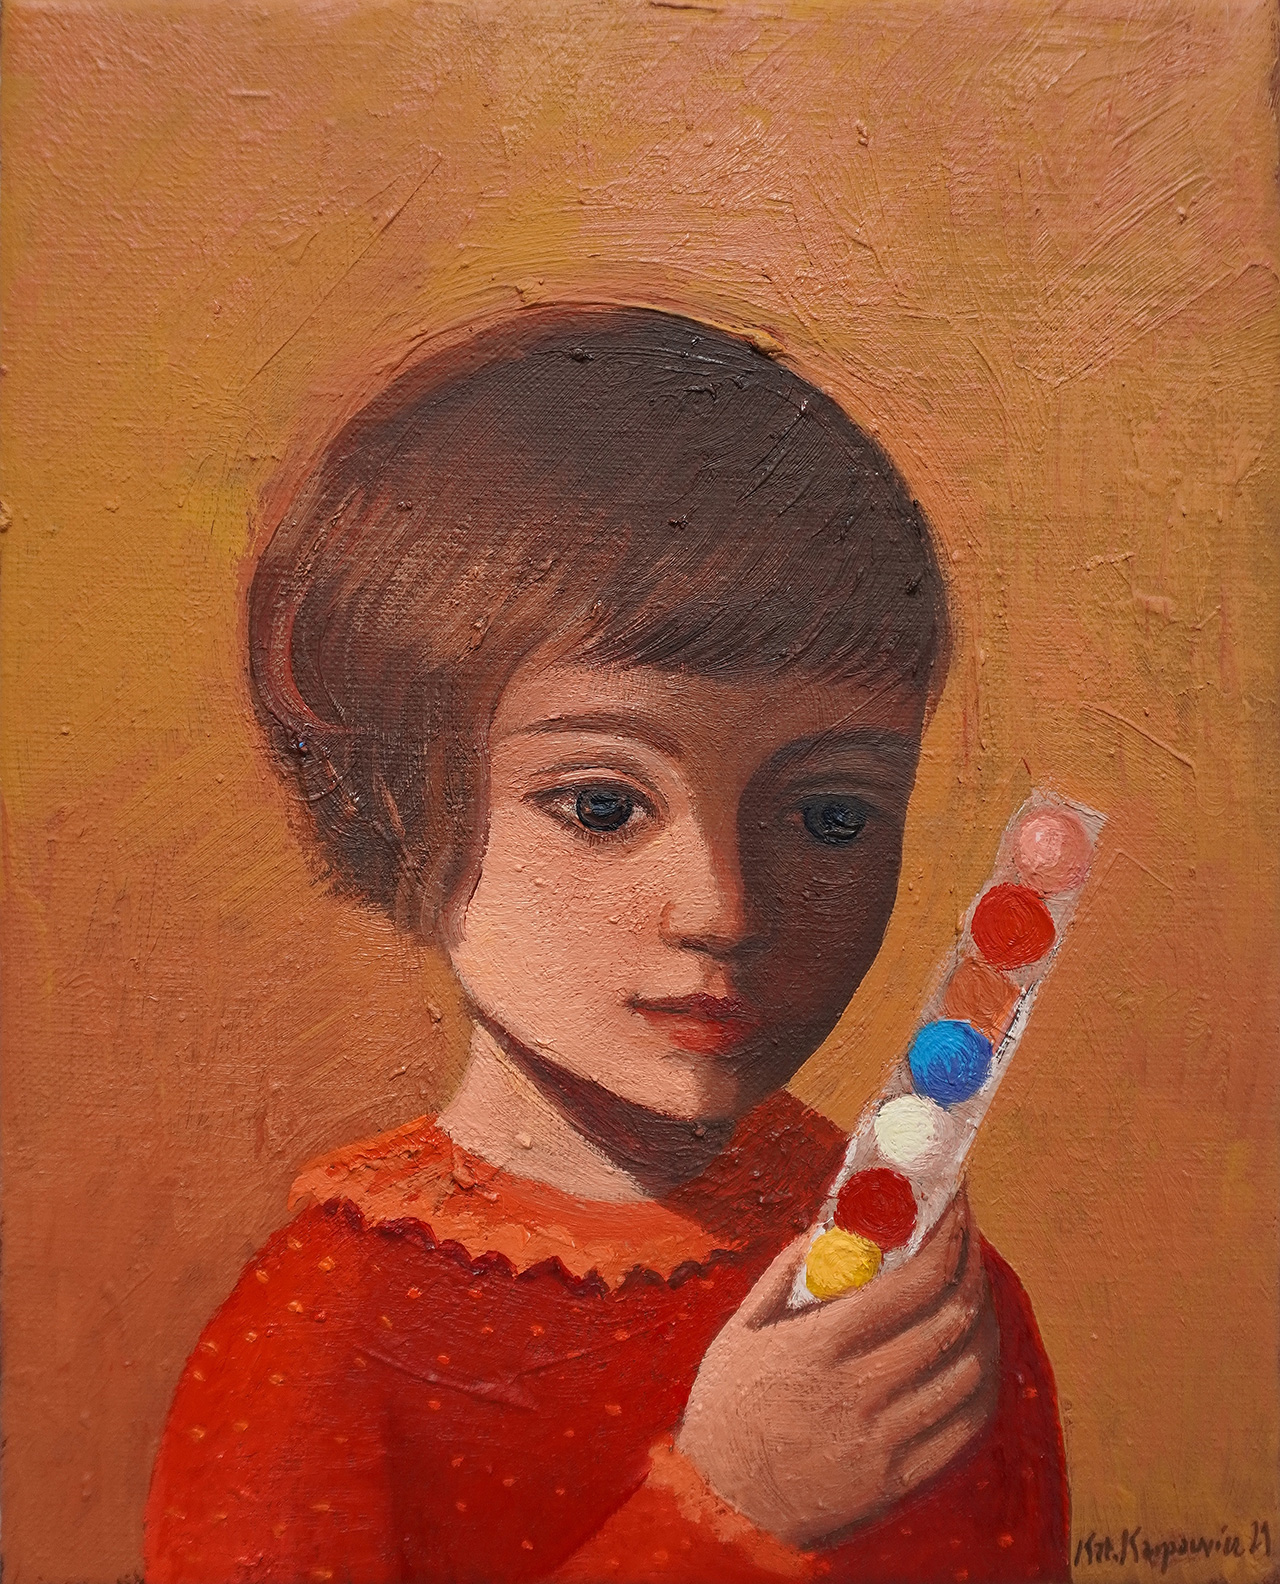 Katarzyna Karpowicz - Chewing gum balls (Oil on Canvas | Size: 32 x 28 cm | Price: 6000 PLN)